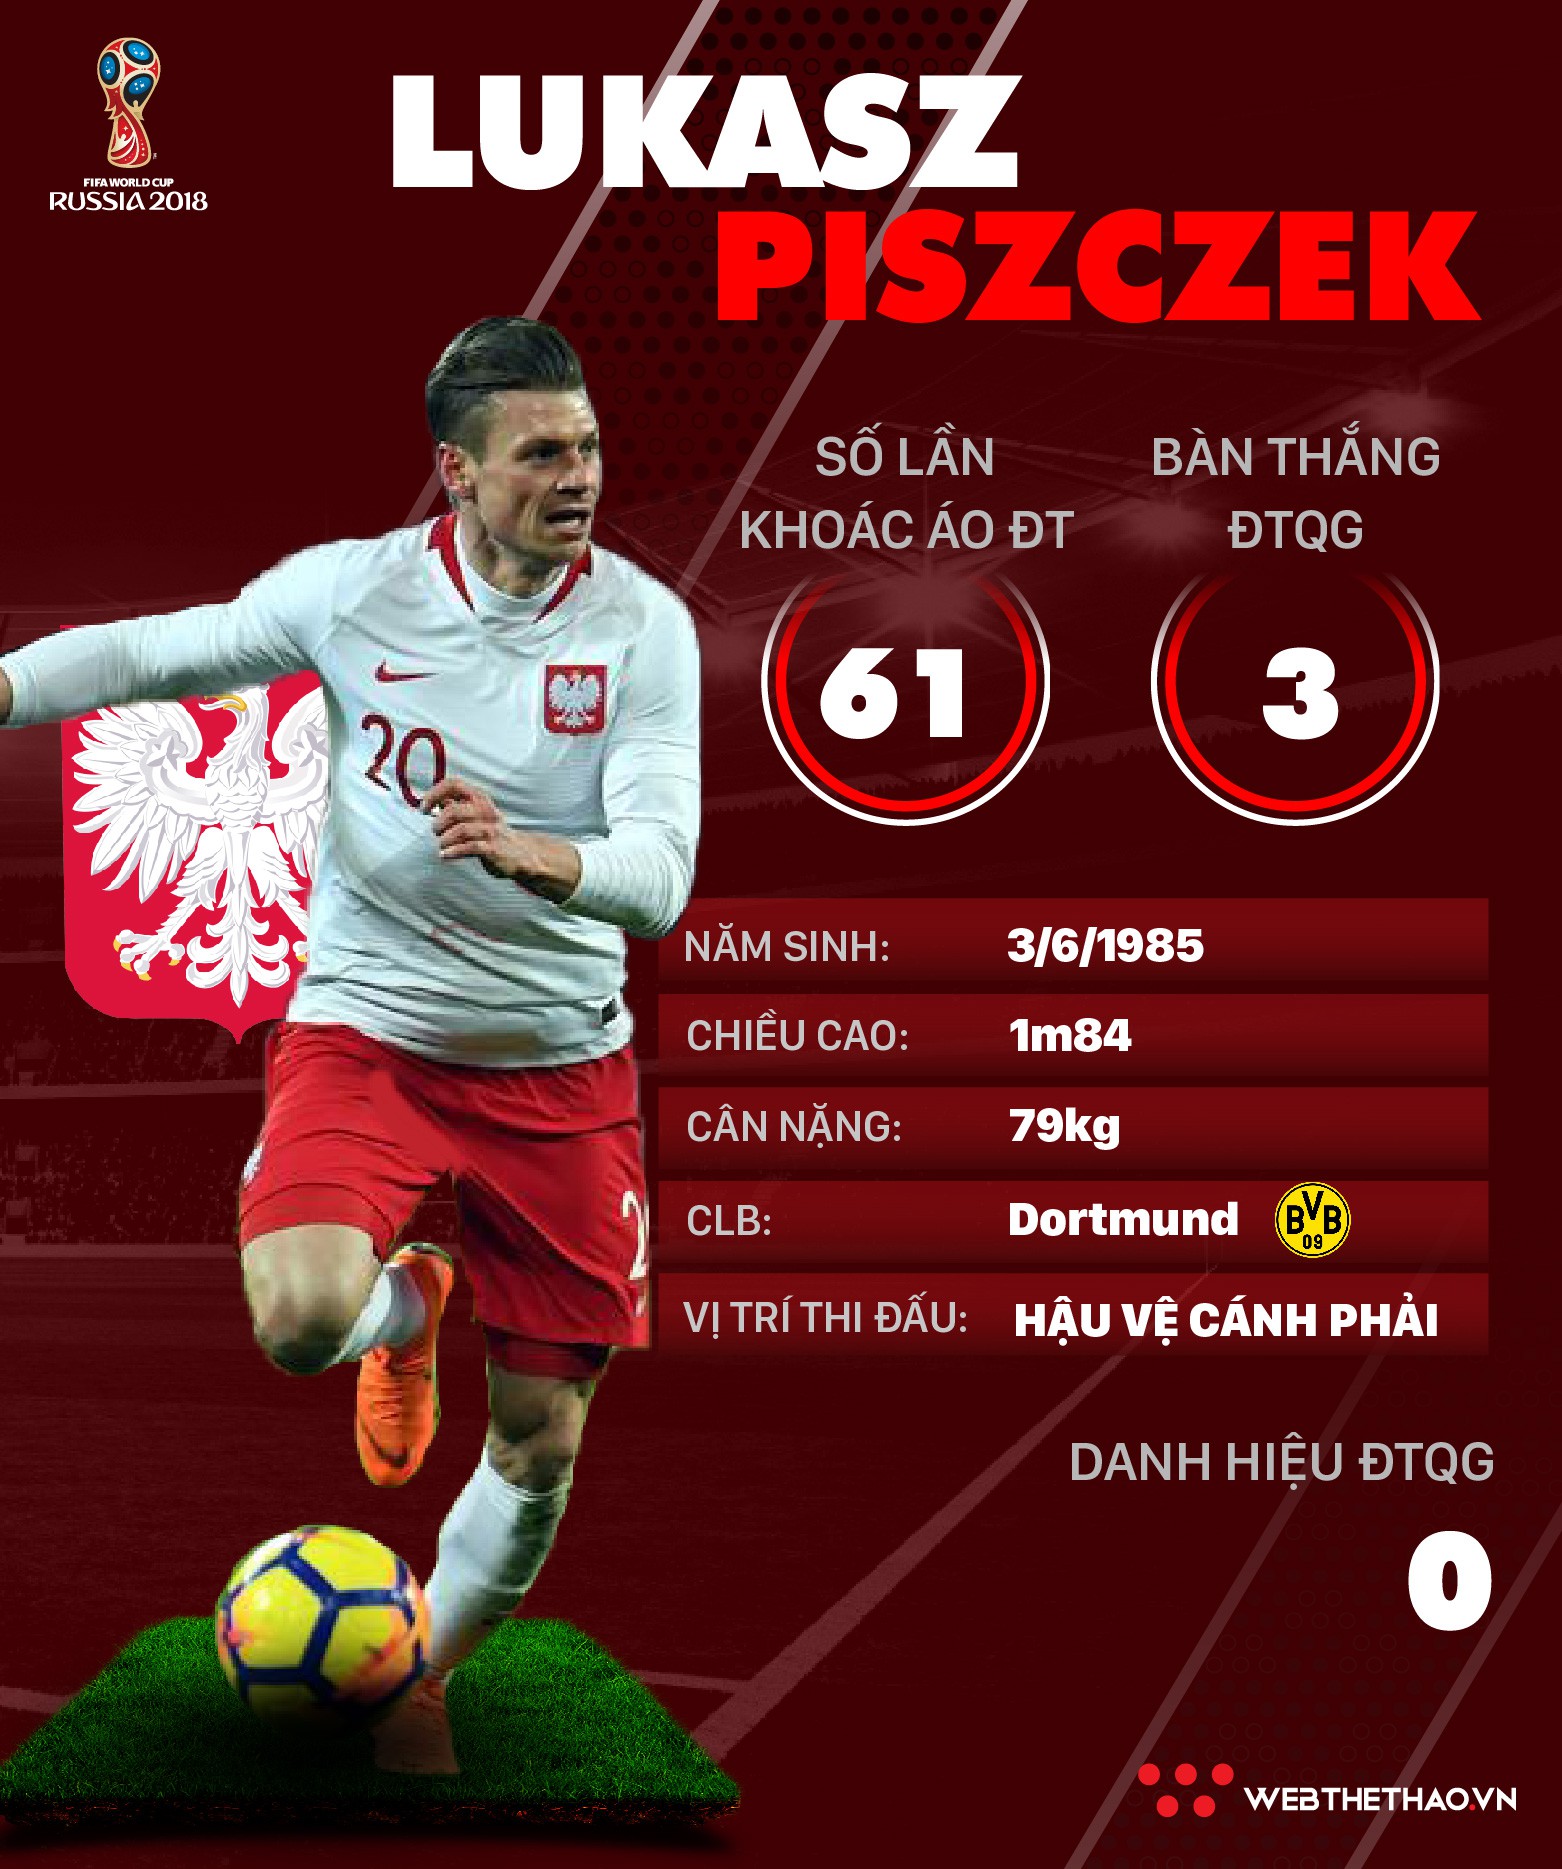 Thông tin cầu thủ Lukasz Piszczek của ĐT Ba Lan dự World Cup 2018 - Ảnh 1.